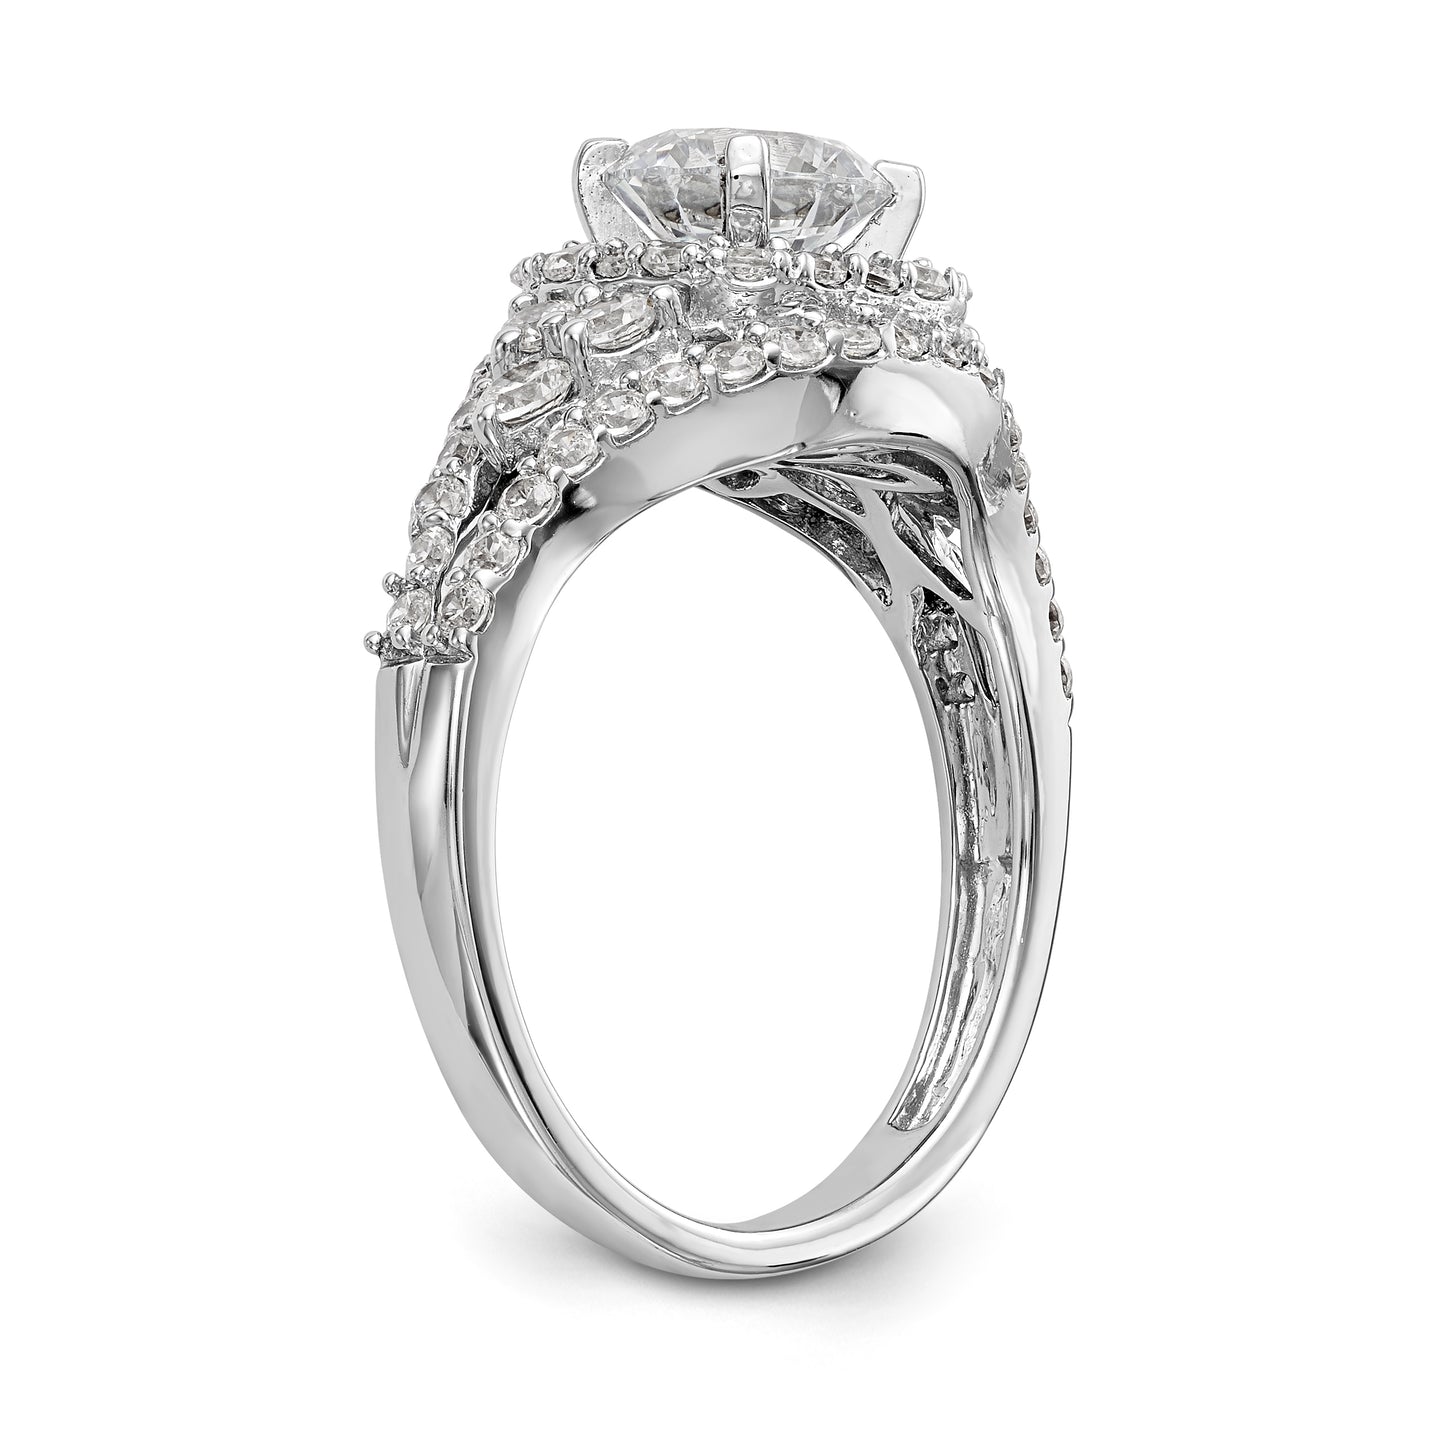 14kw Peg Set Simulated Diamond Halo Engagement Ring